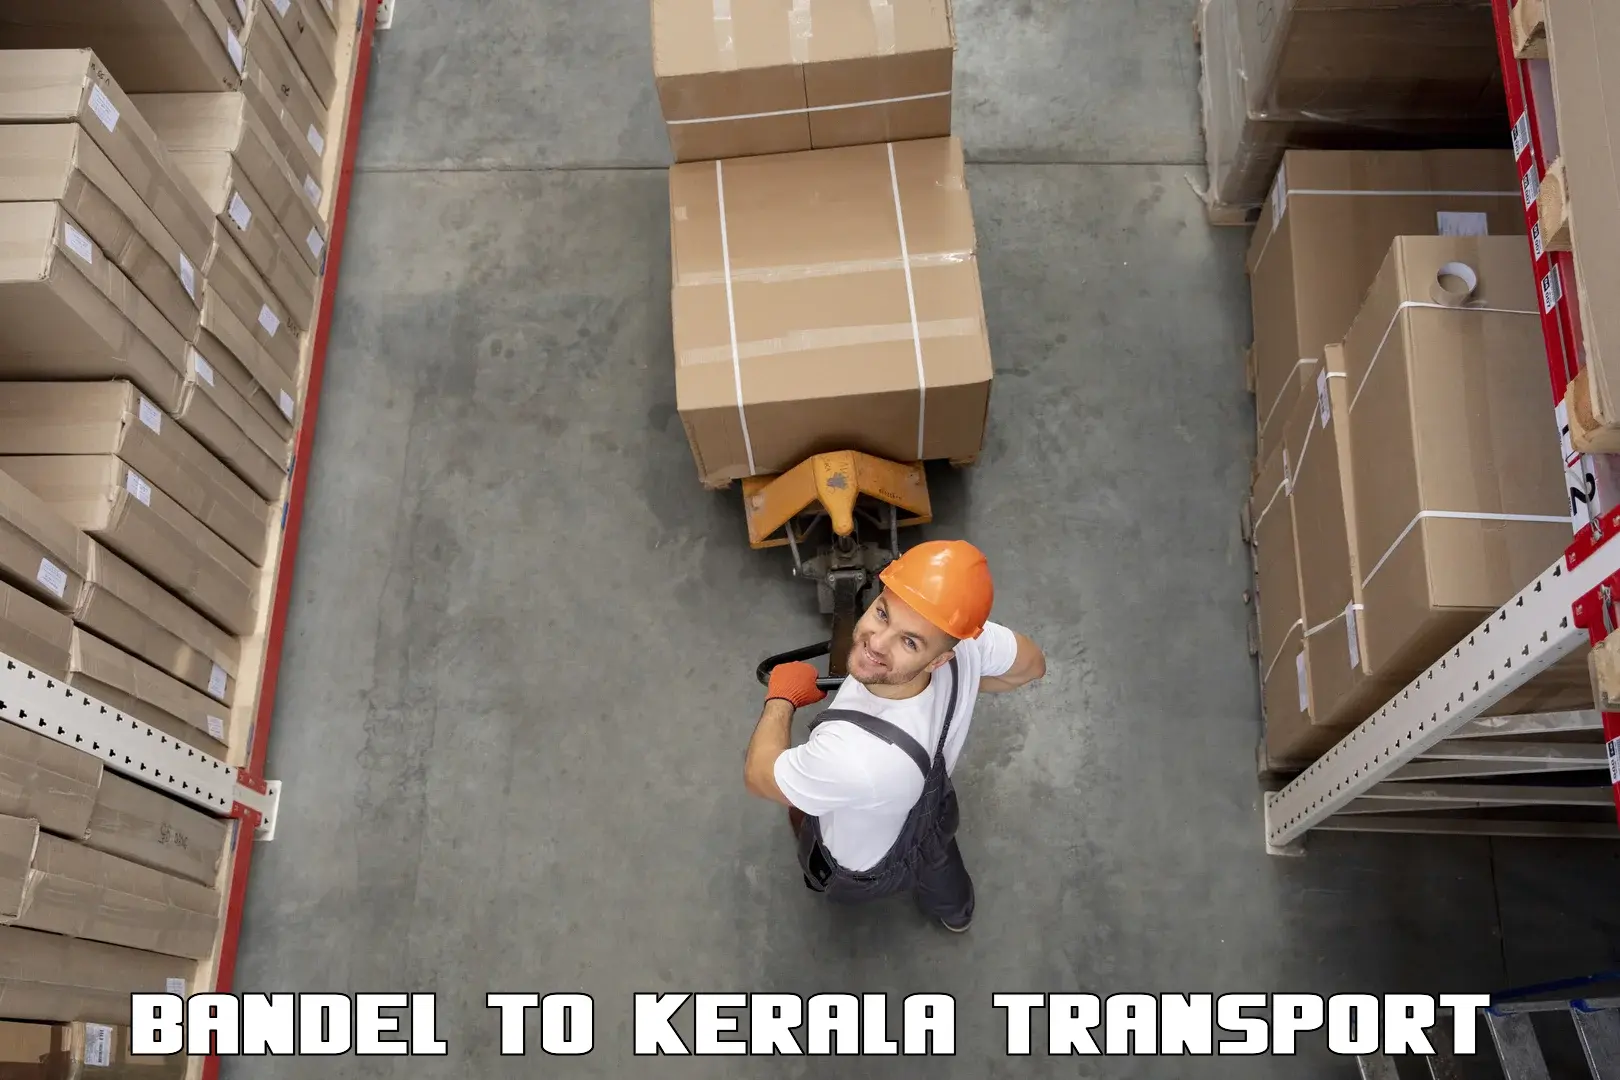 Parcel transport services Bandel to Kerala